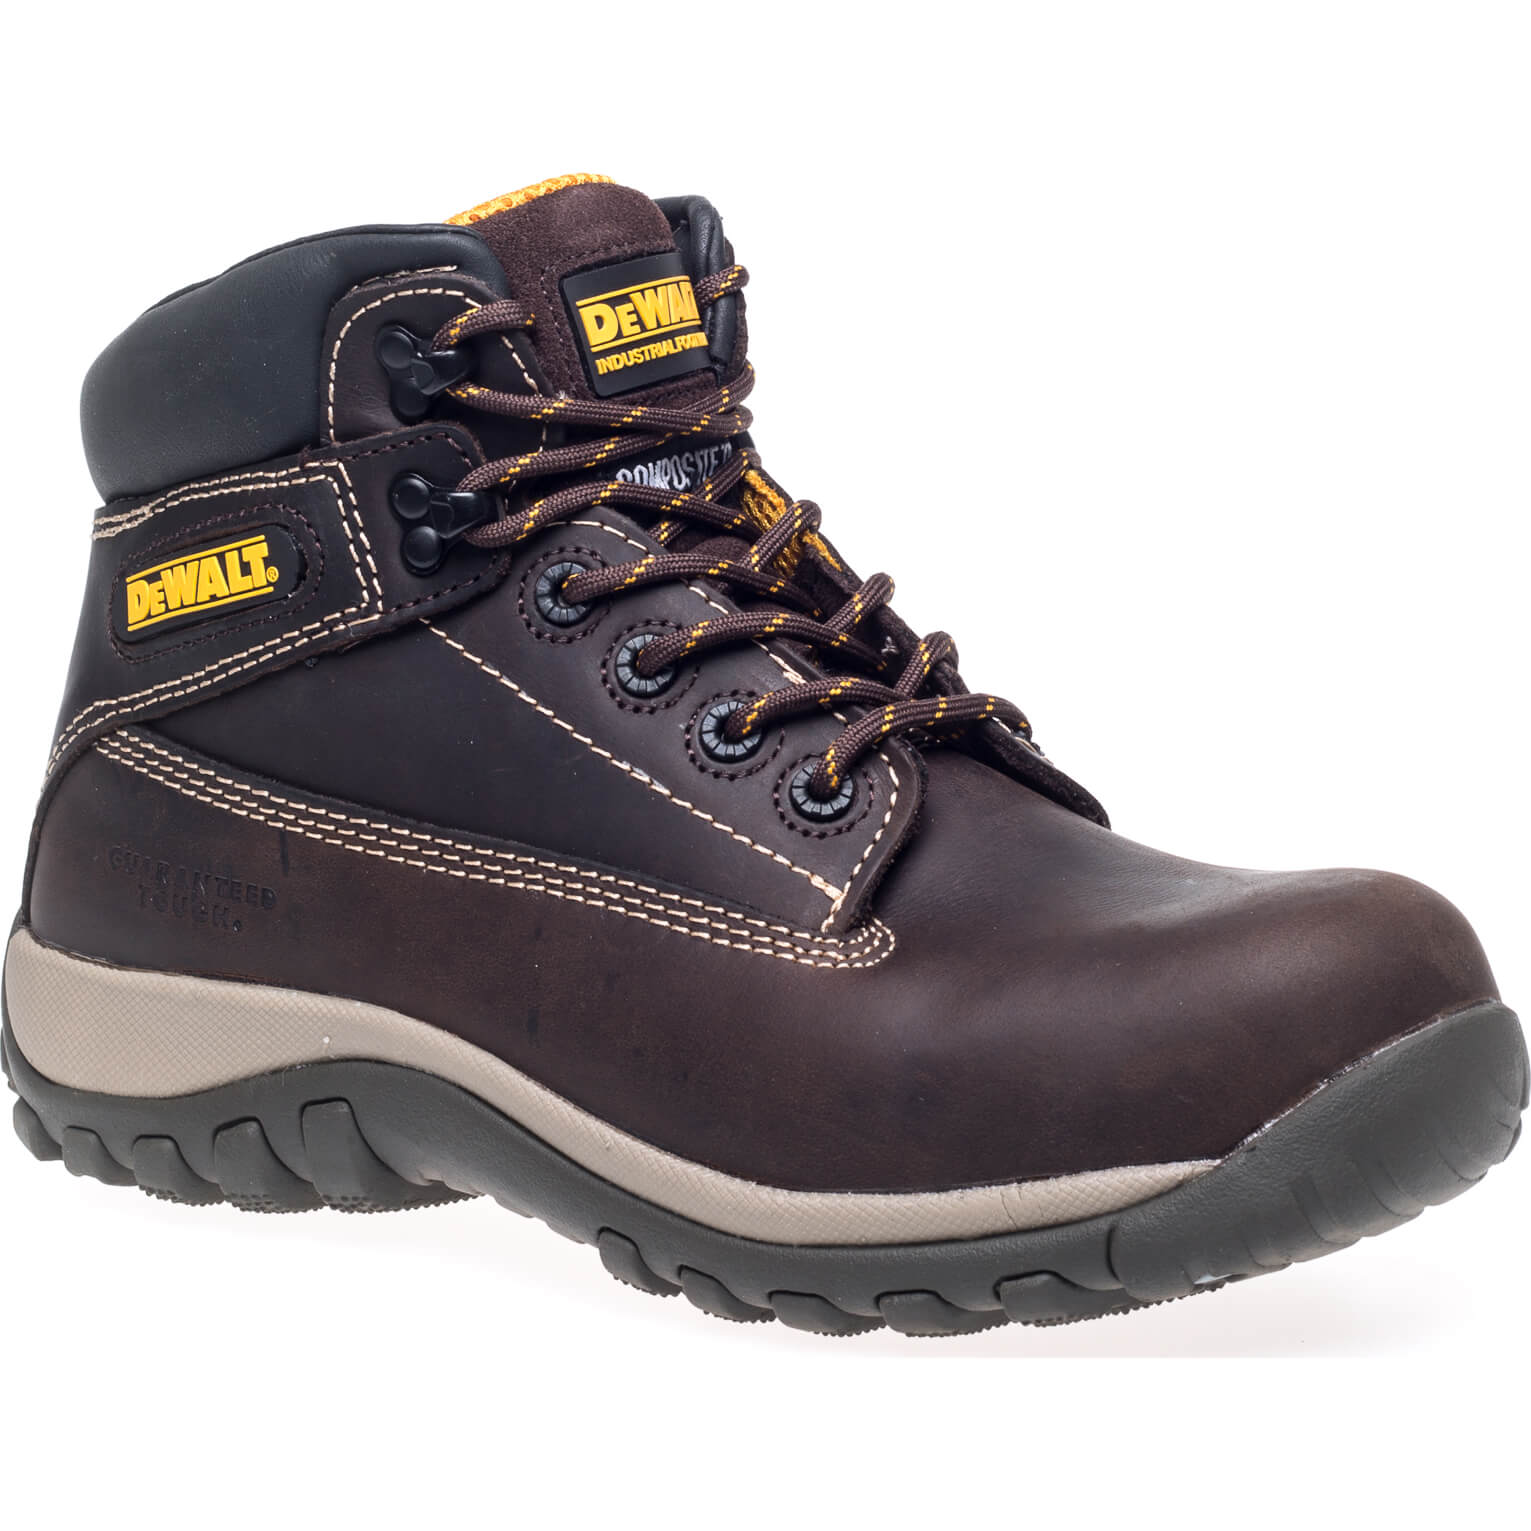 DeWalt Hammer Non Metallic Safety Boots Brown Size 9